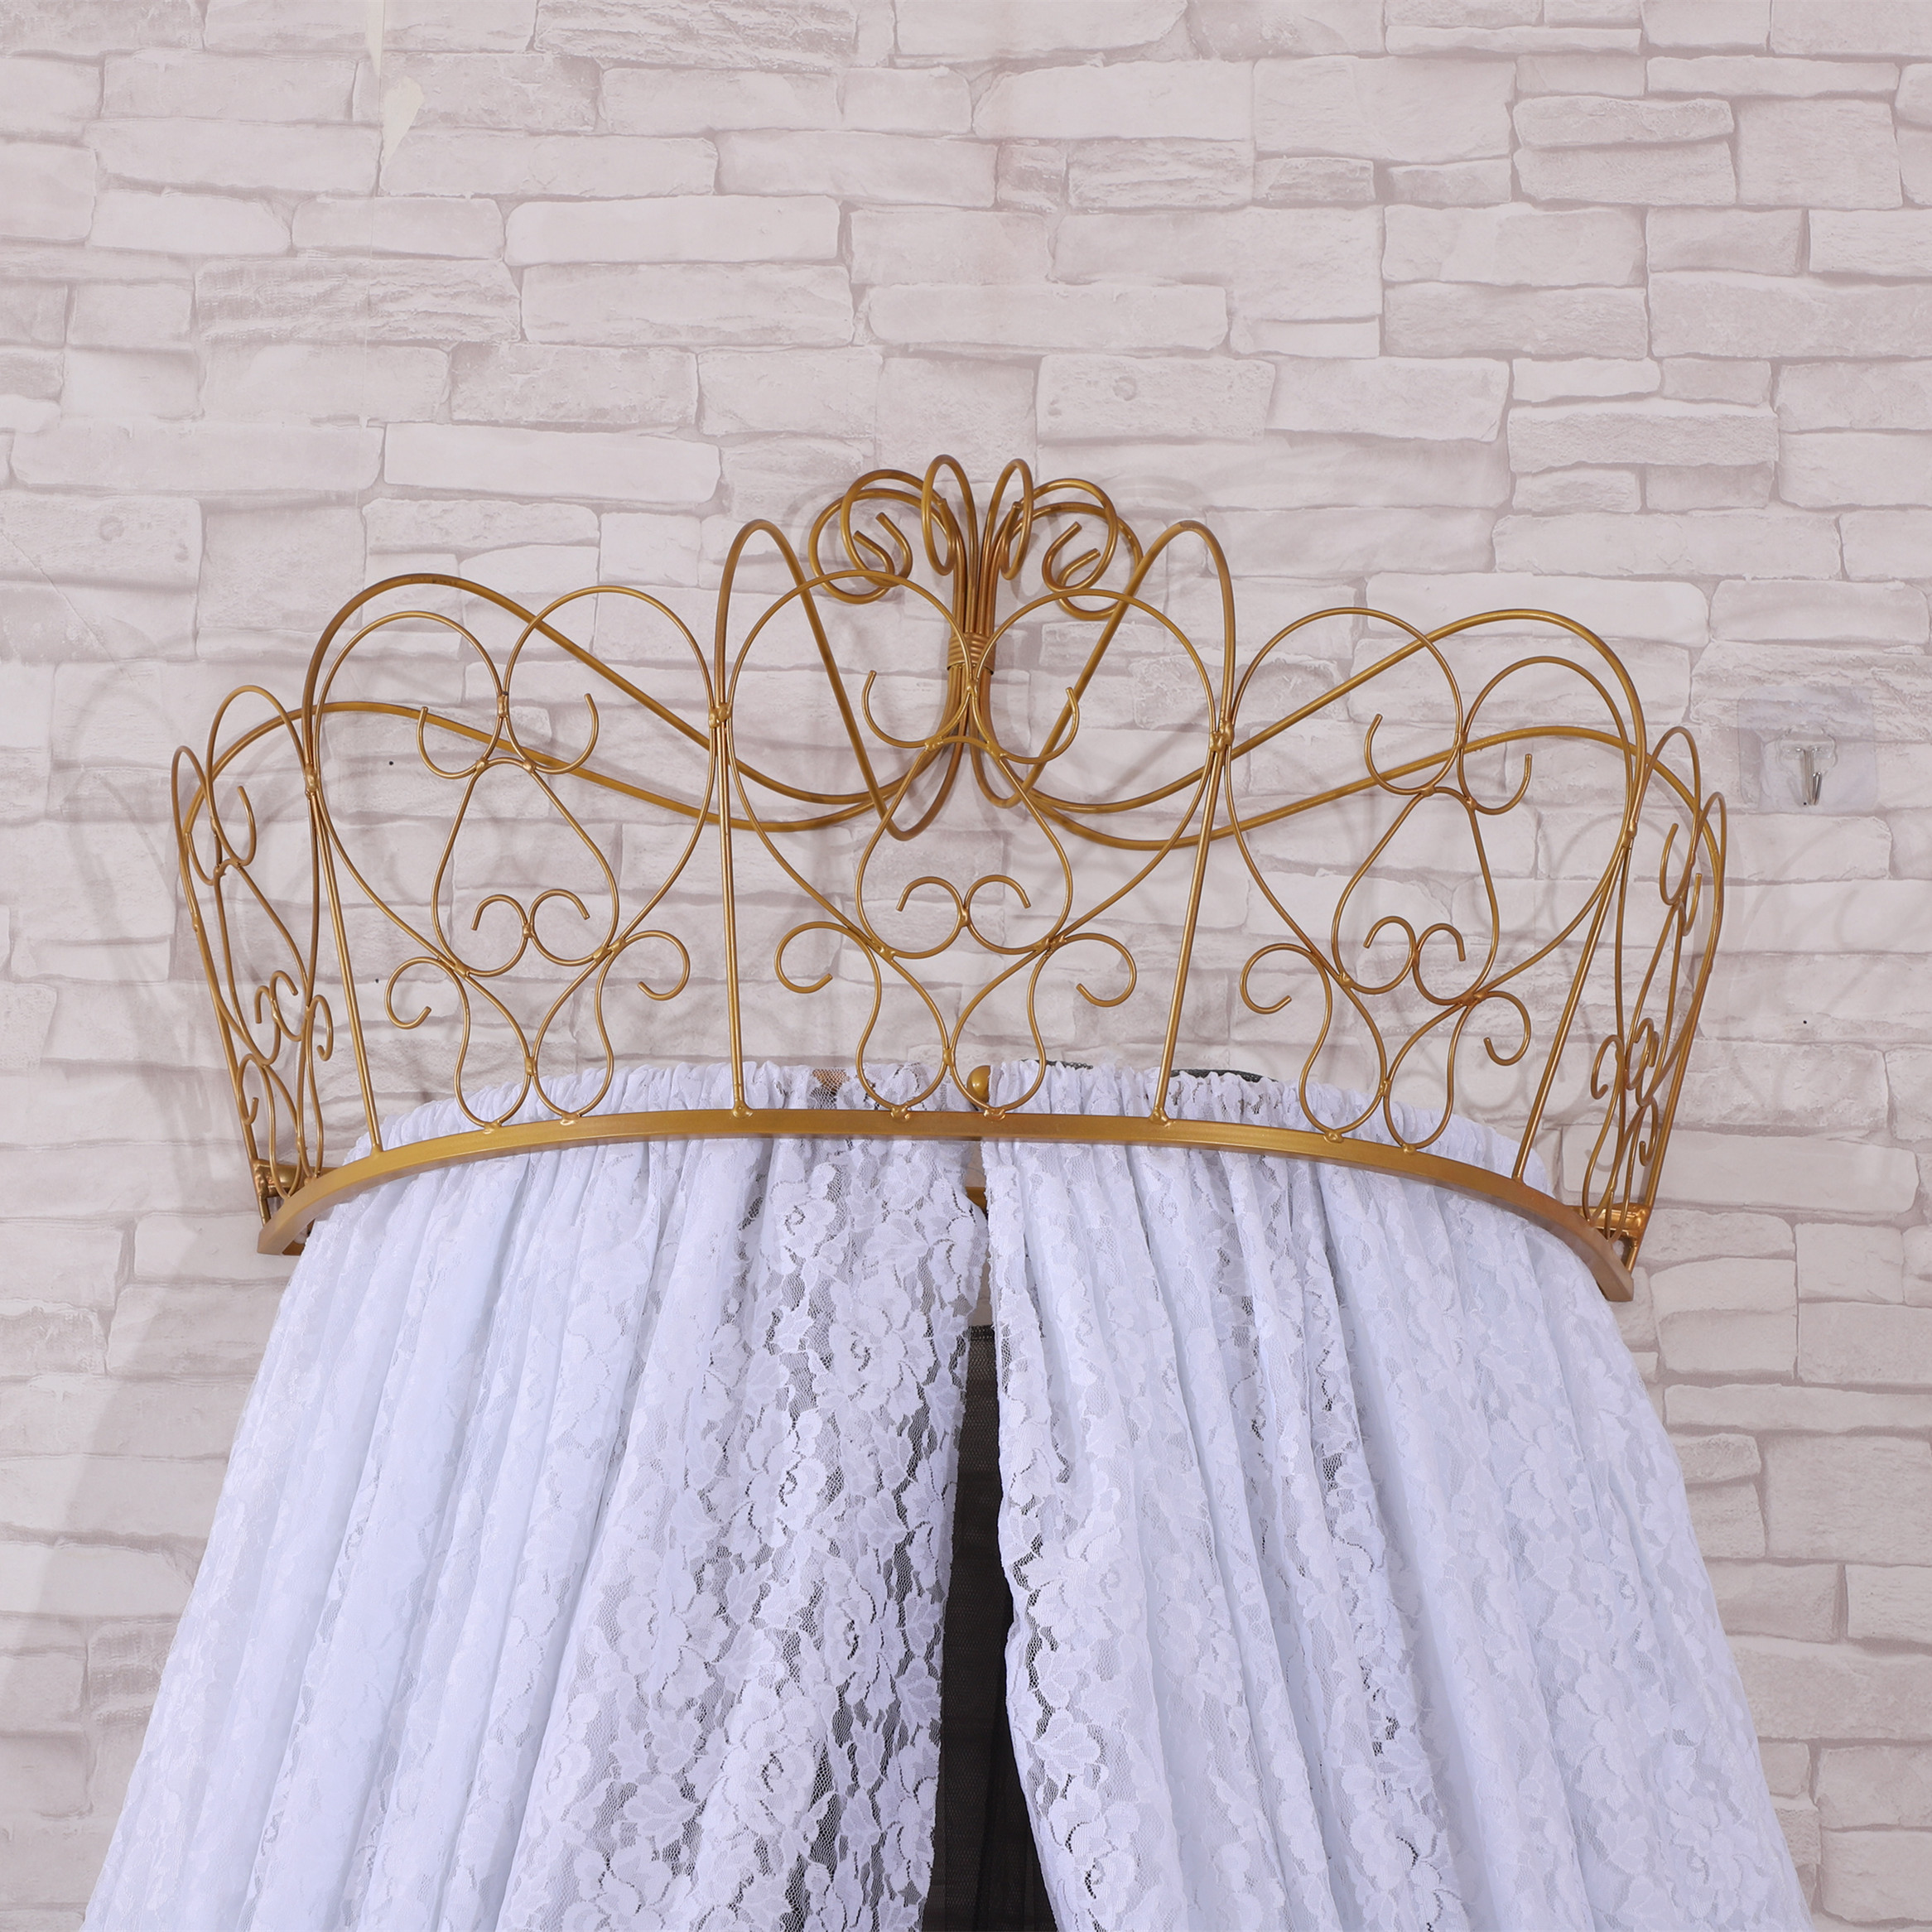 Neuestes Design Prinzessin Crown Top Moskitonetze Spitzenbettvorhänge